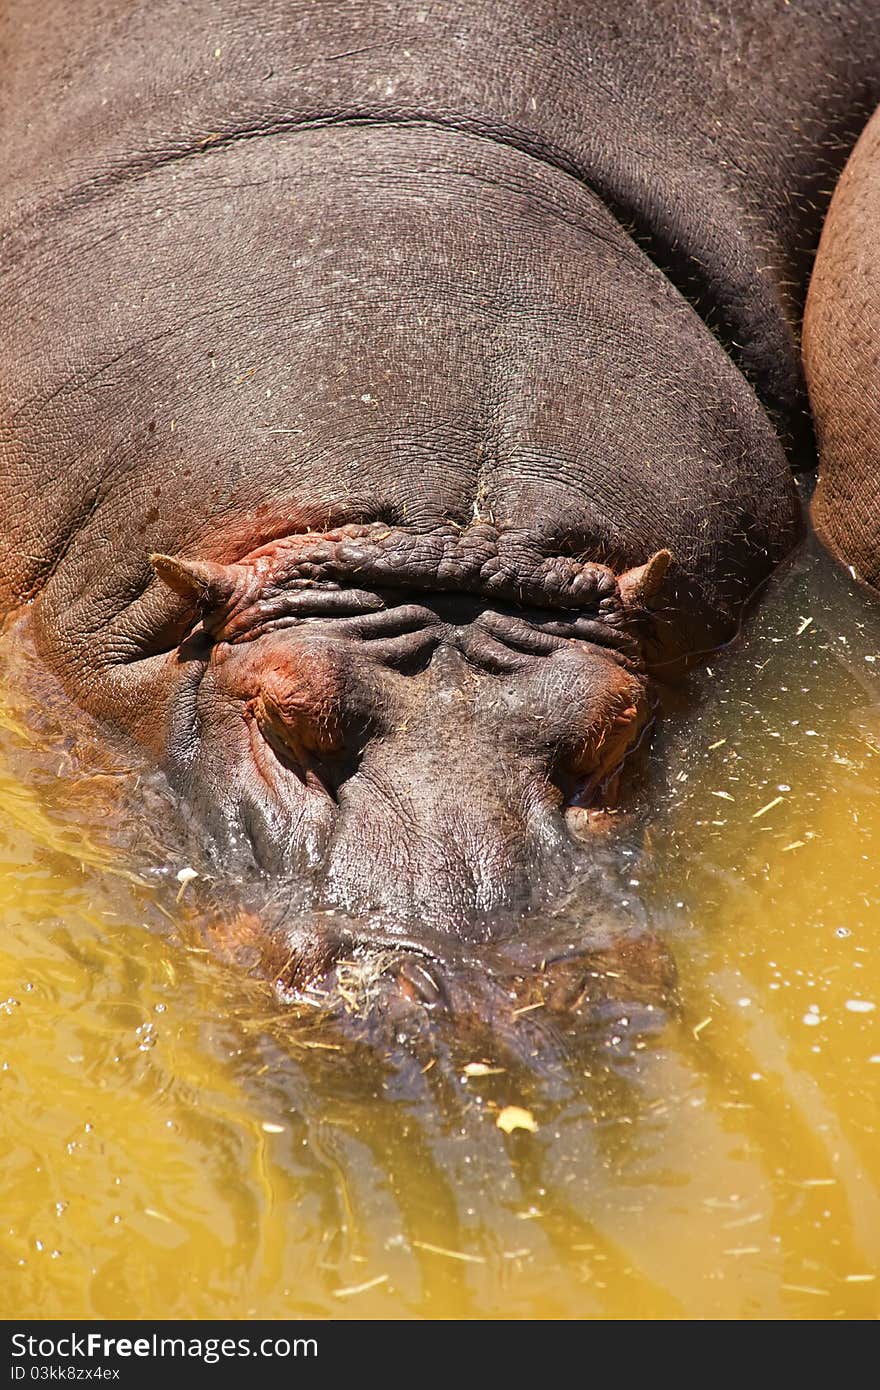 The hippopotamus (Hippopotamus amphibius) swimming